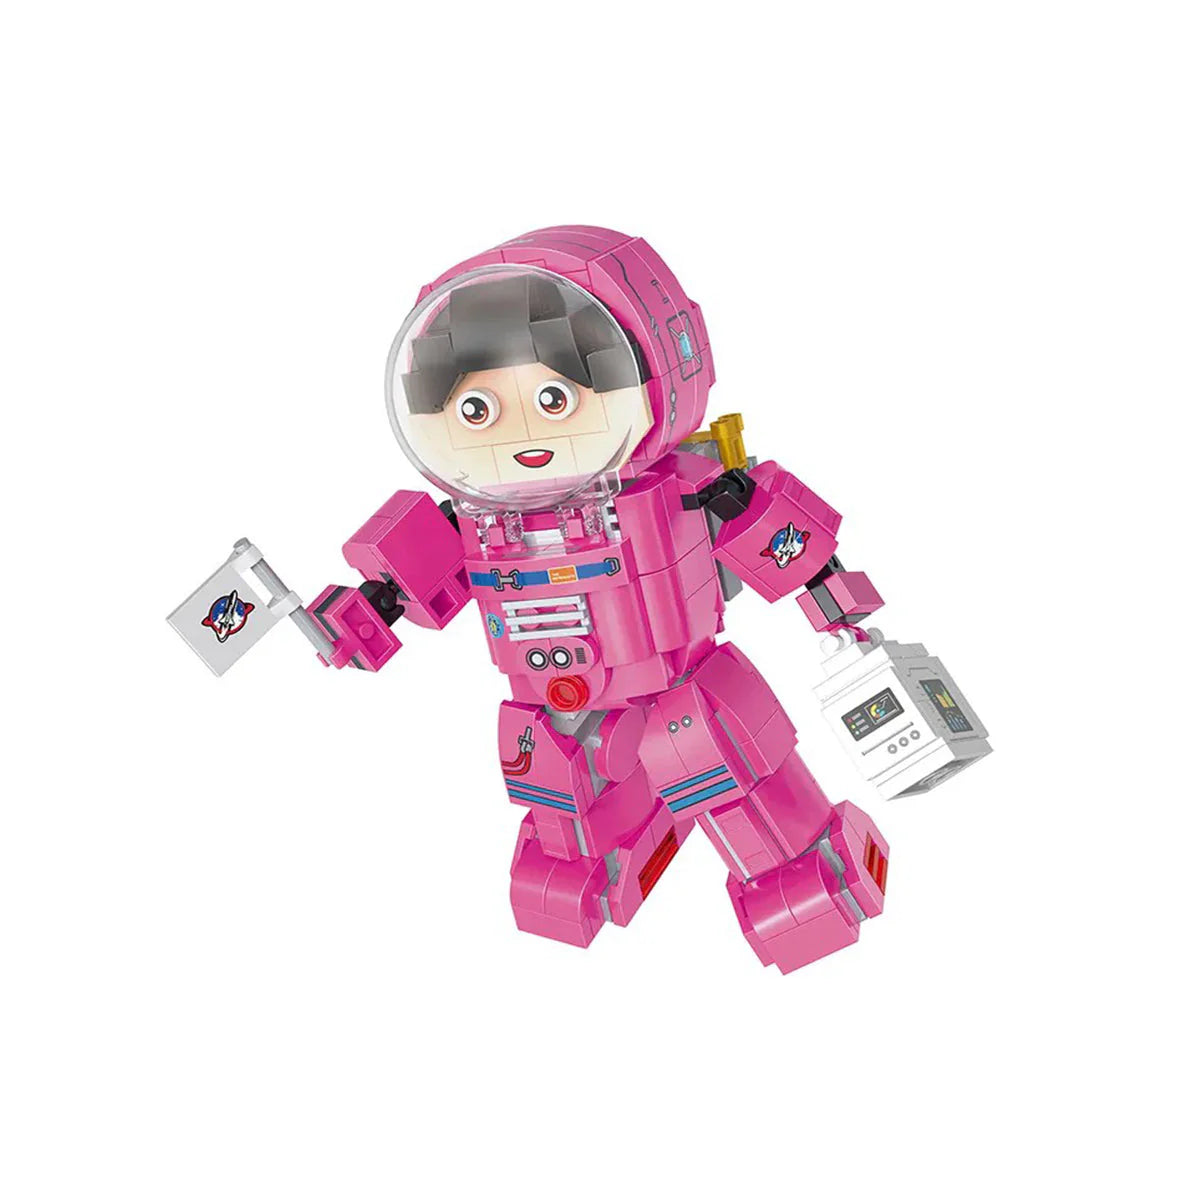 Cogo Space Female Astronaut Building Blocks